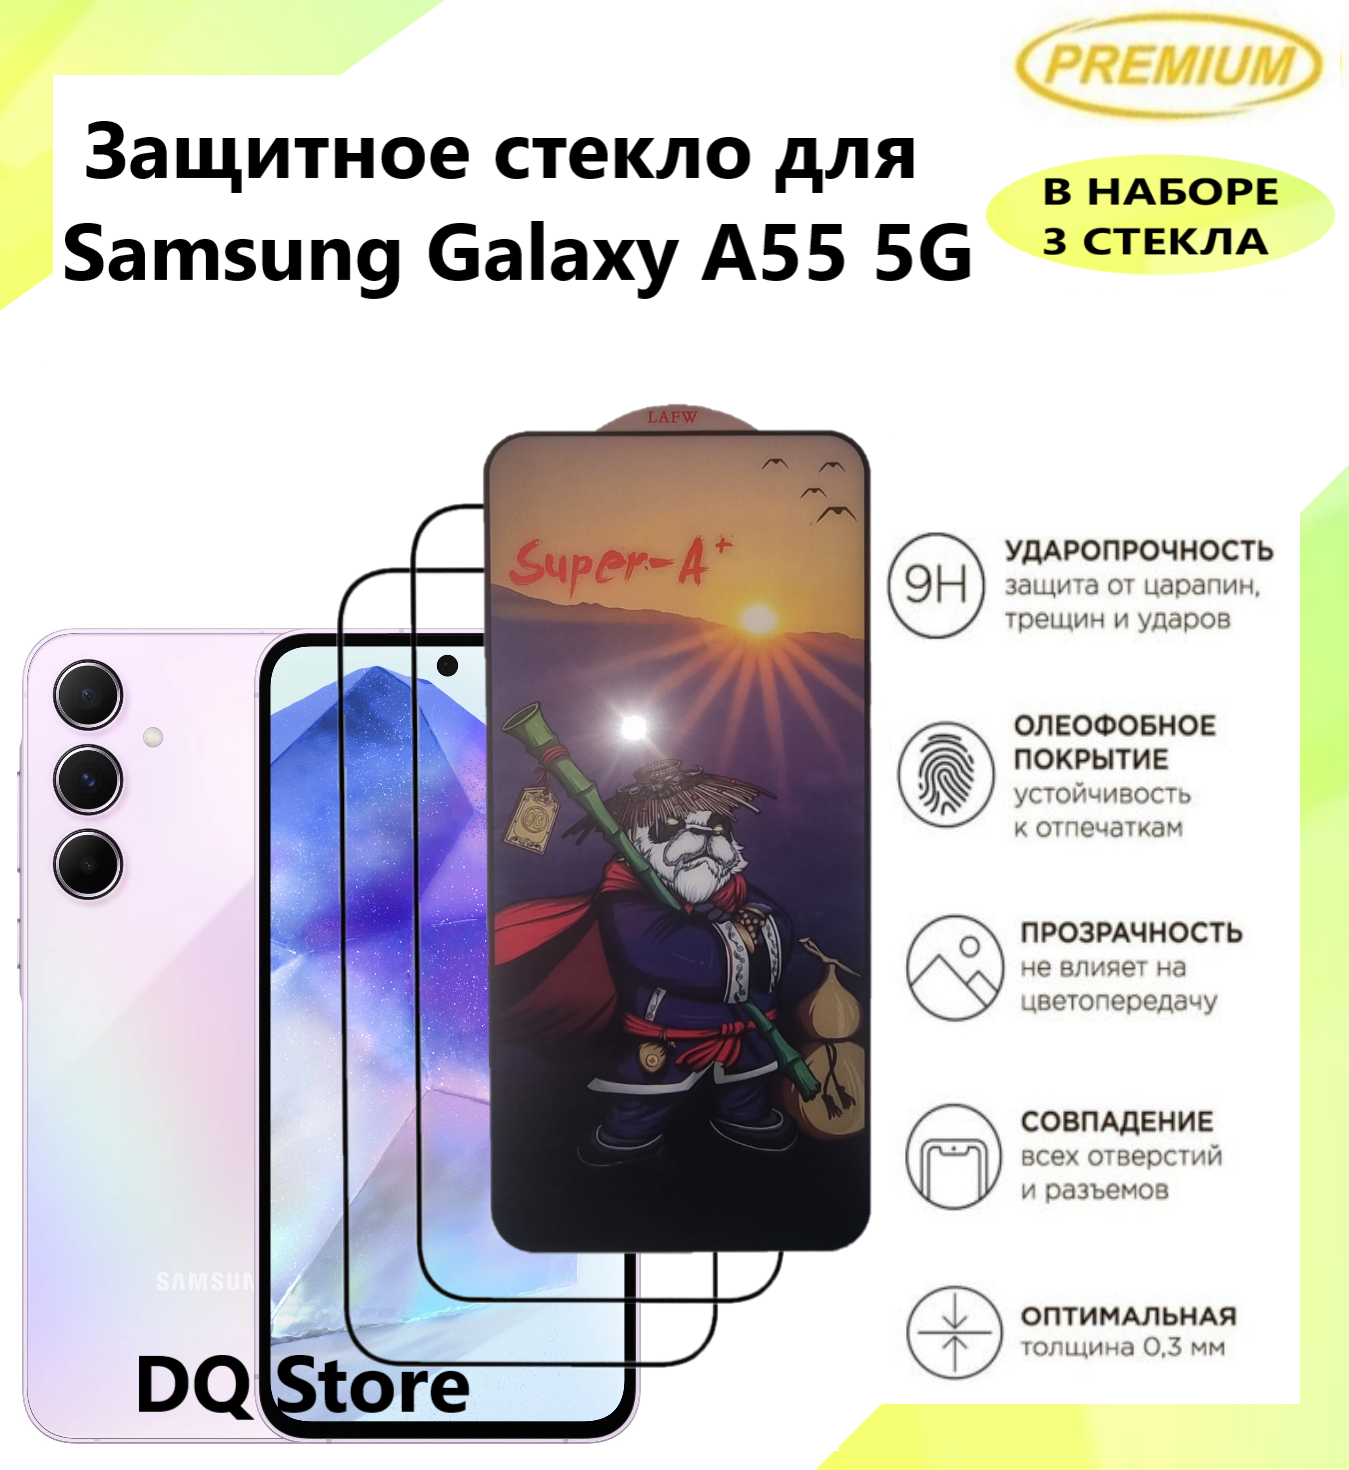 3 Защитных стекла для Samsung Galaxy A55 5G / Самсунг Галакси А55 . Полноэкранные защитные стекла с олеофобным покрытием Premium